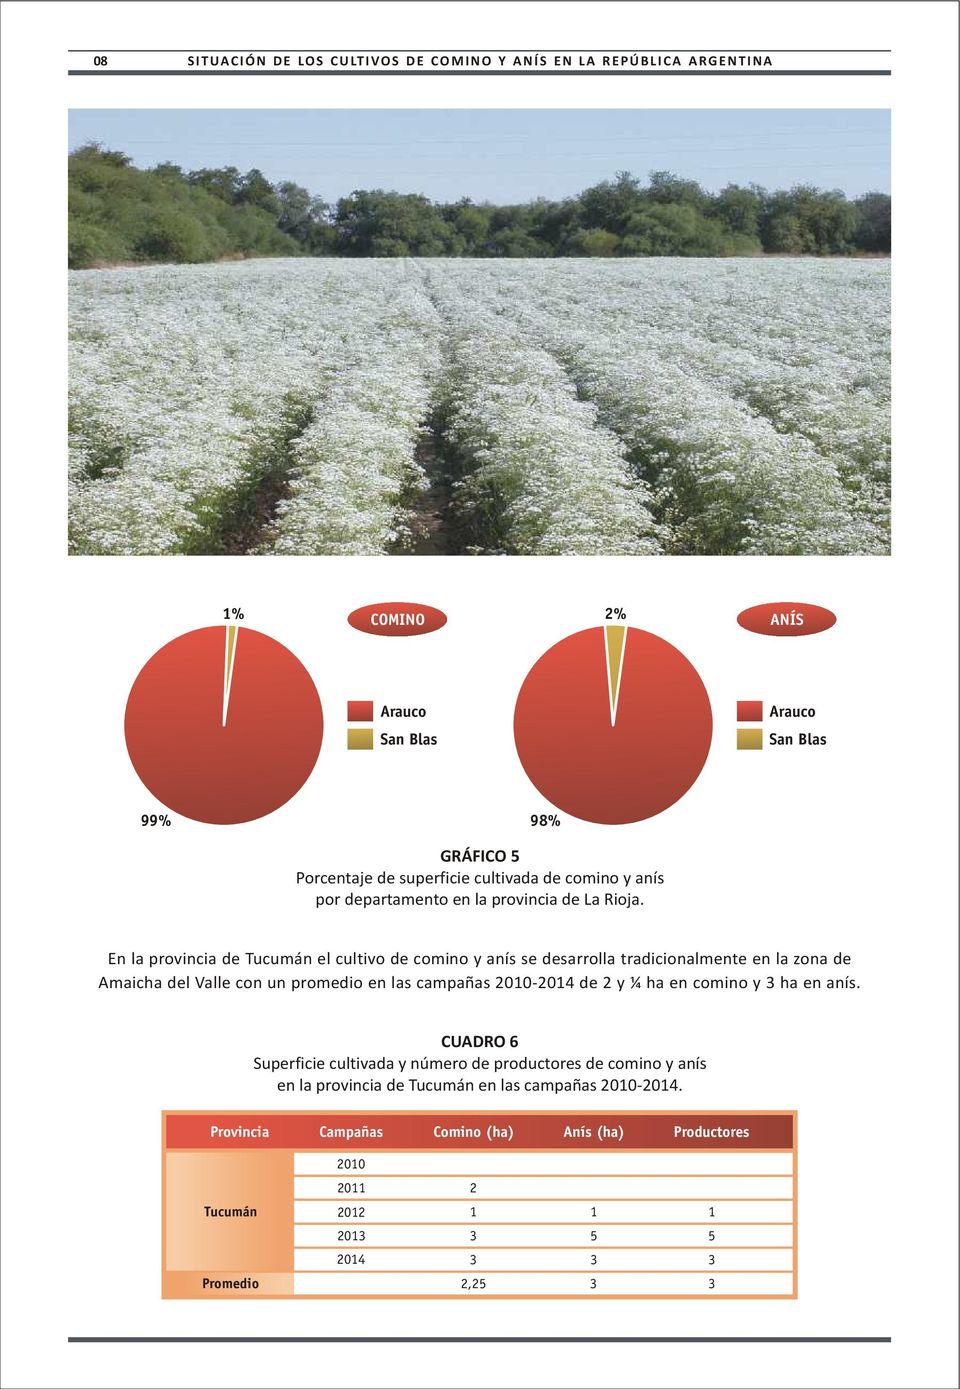 En la provincia de Tucumán el cultivo de comino y anís se desarrolla tradicionalmente en la zona de Amaicha del Valle con un promedio en las campañas 2010-2014 de 2 y ¼